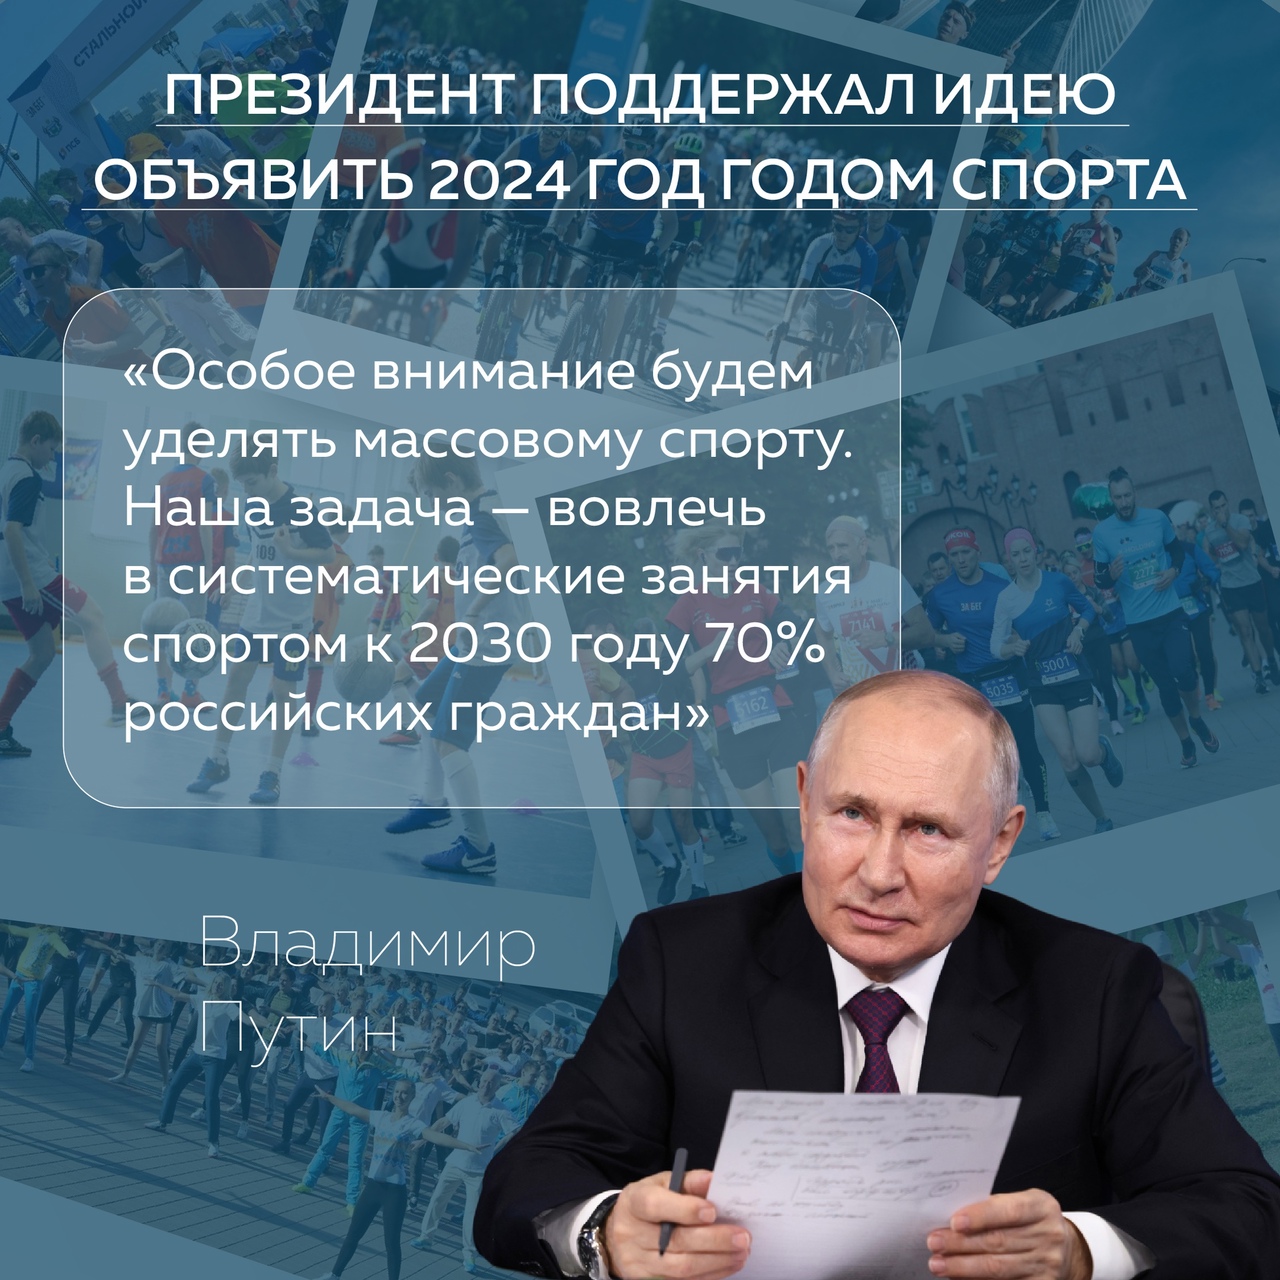 Владимир Путин поддержал идею объявить 2024 год - Годом спорта.